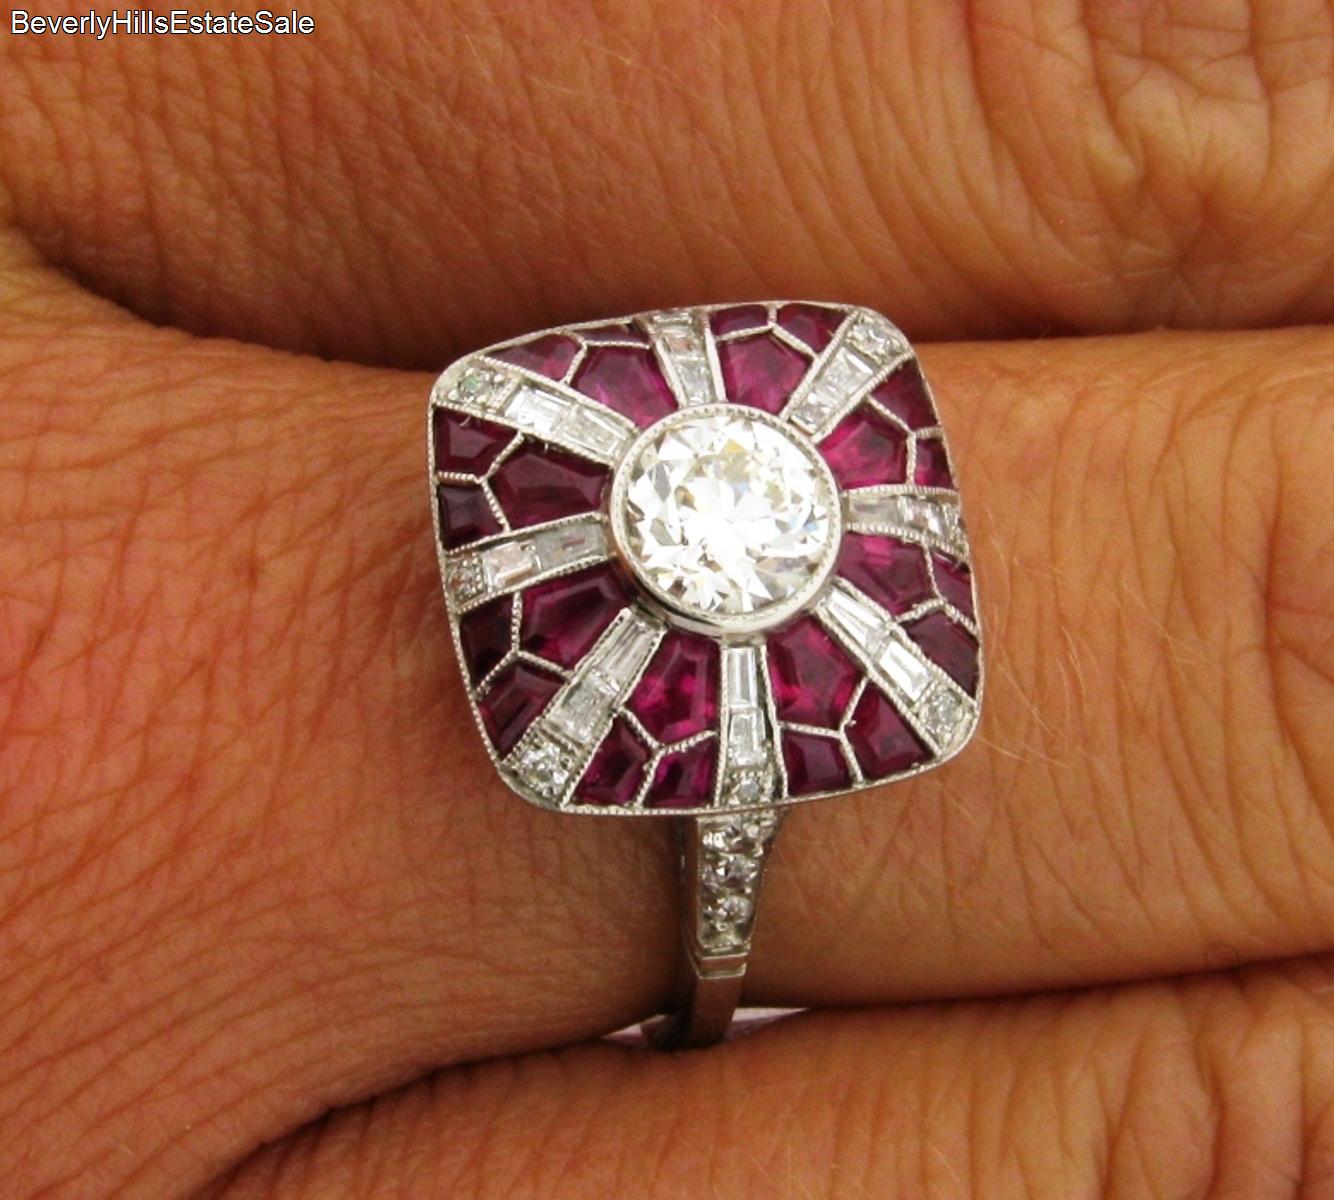 Magnificent Antique Art Deco Diamonds Rubies Platinum Ring | eBay